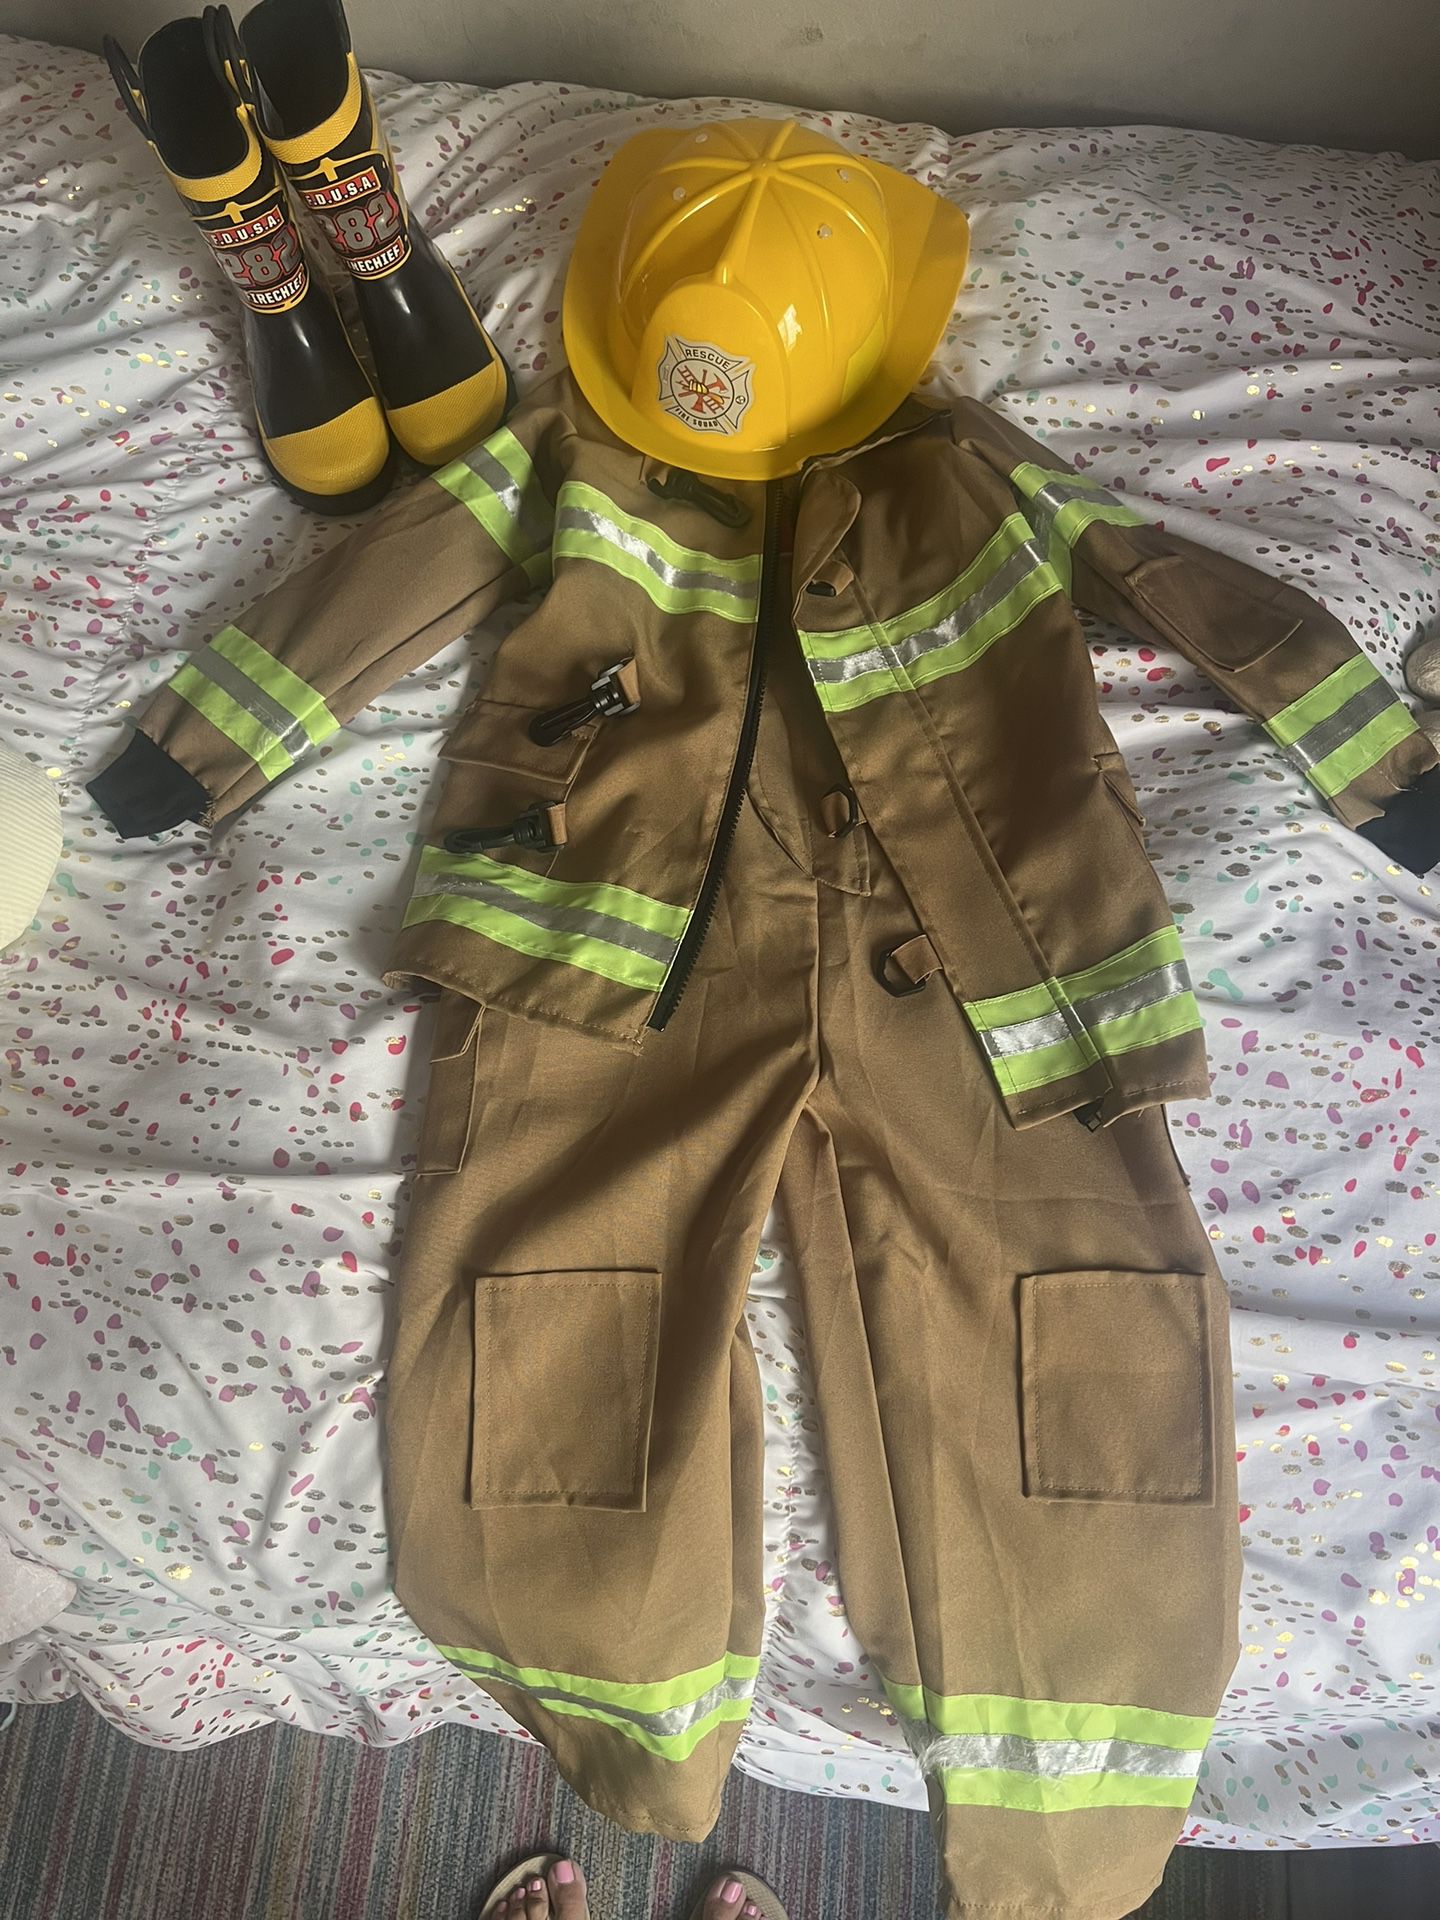 Firefighter Dress Up 